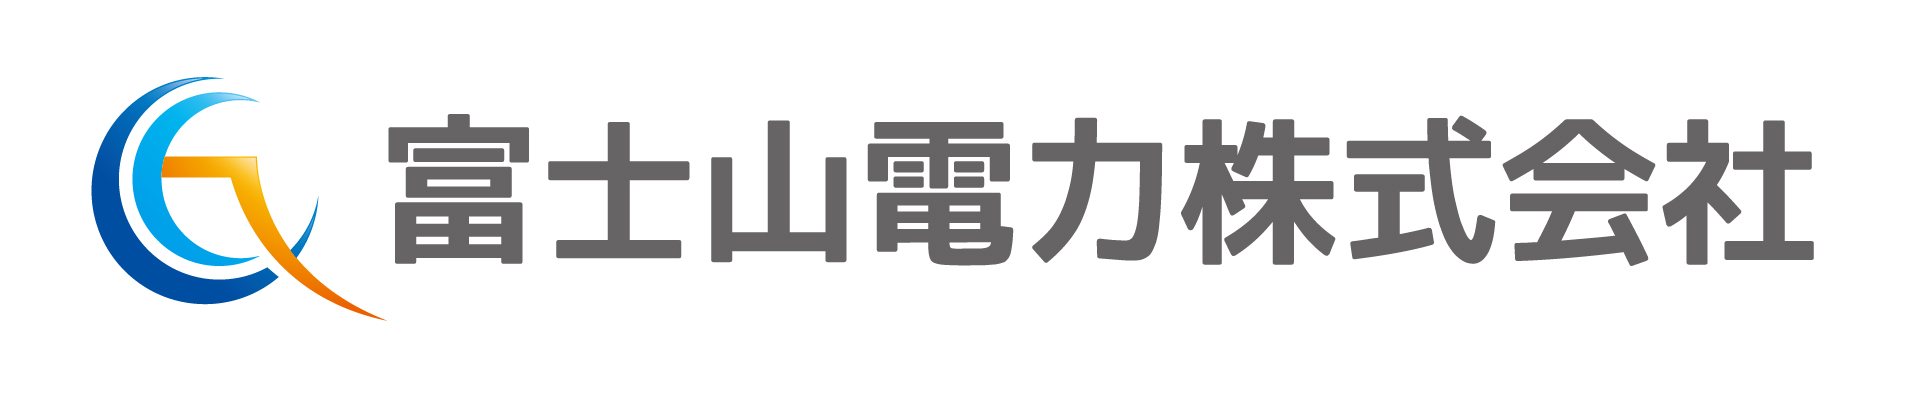 富士山電力株式会社